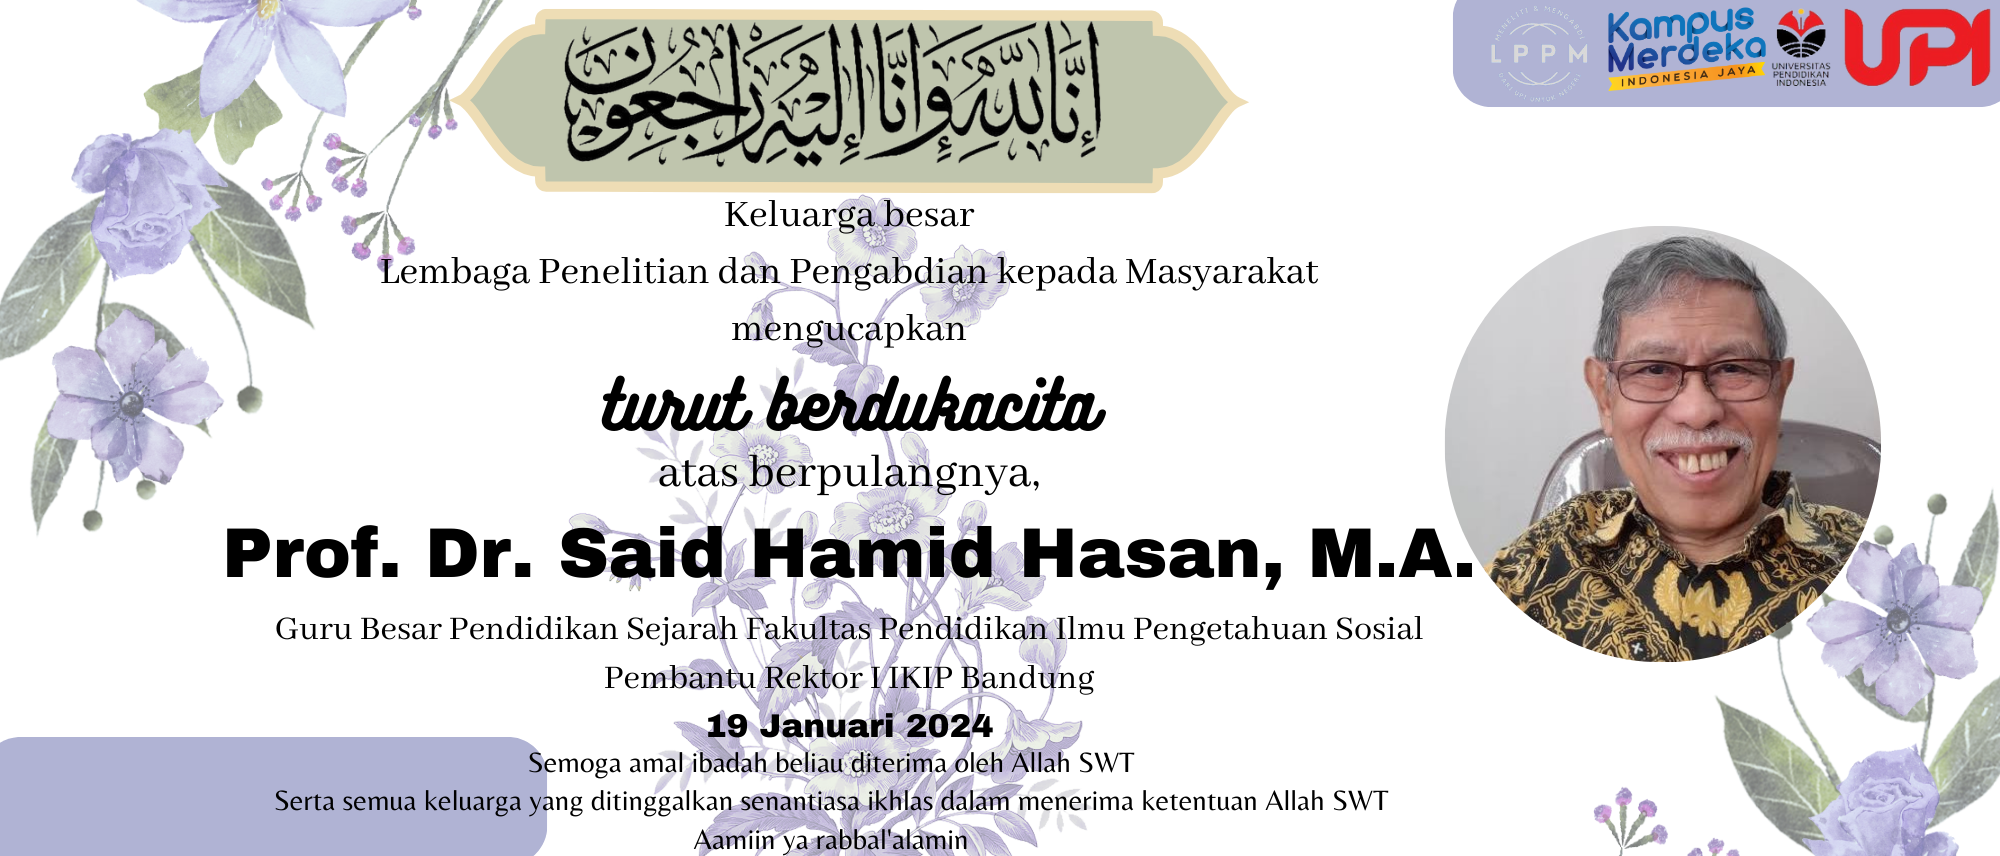 Berita Duka Prof. Dr. Said Hamid Hasan, M.A.